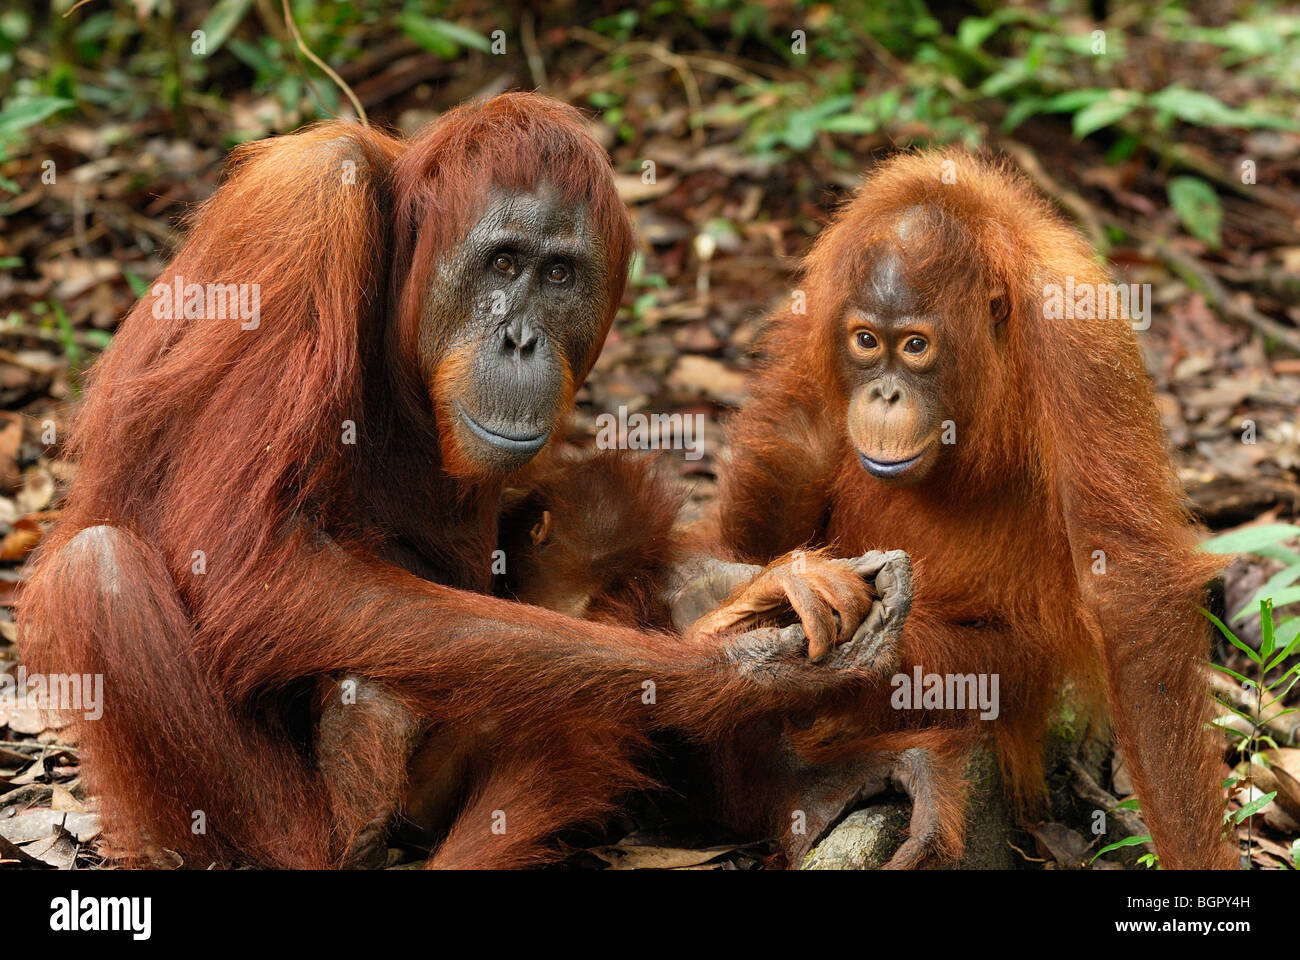 L'orang-outan de Bornéo (Pongo pygmaeus), femme avec un bébé, qui fuient le camp, parc national de Tanjung Puting, Kalimantan, Bornéo, Indonésie Banque D'Images